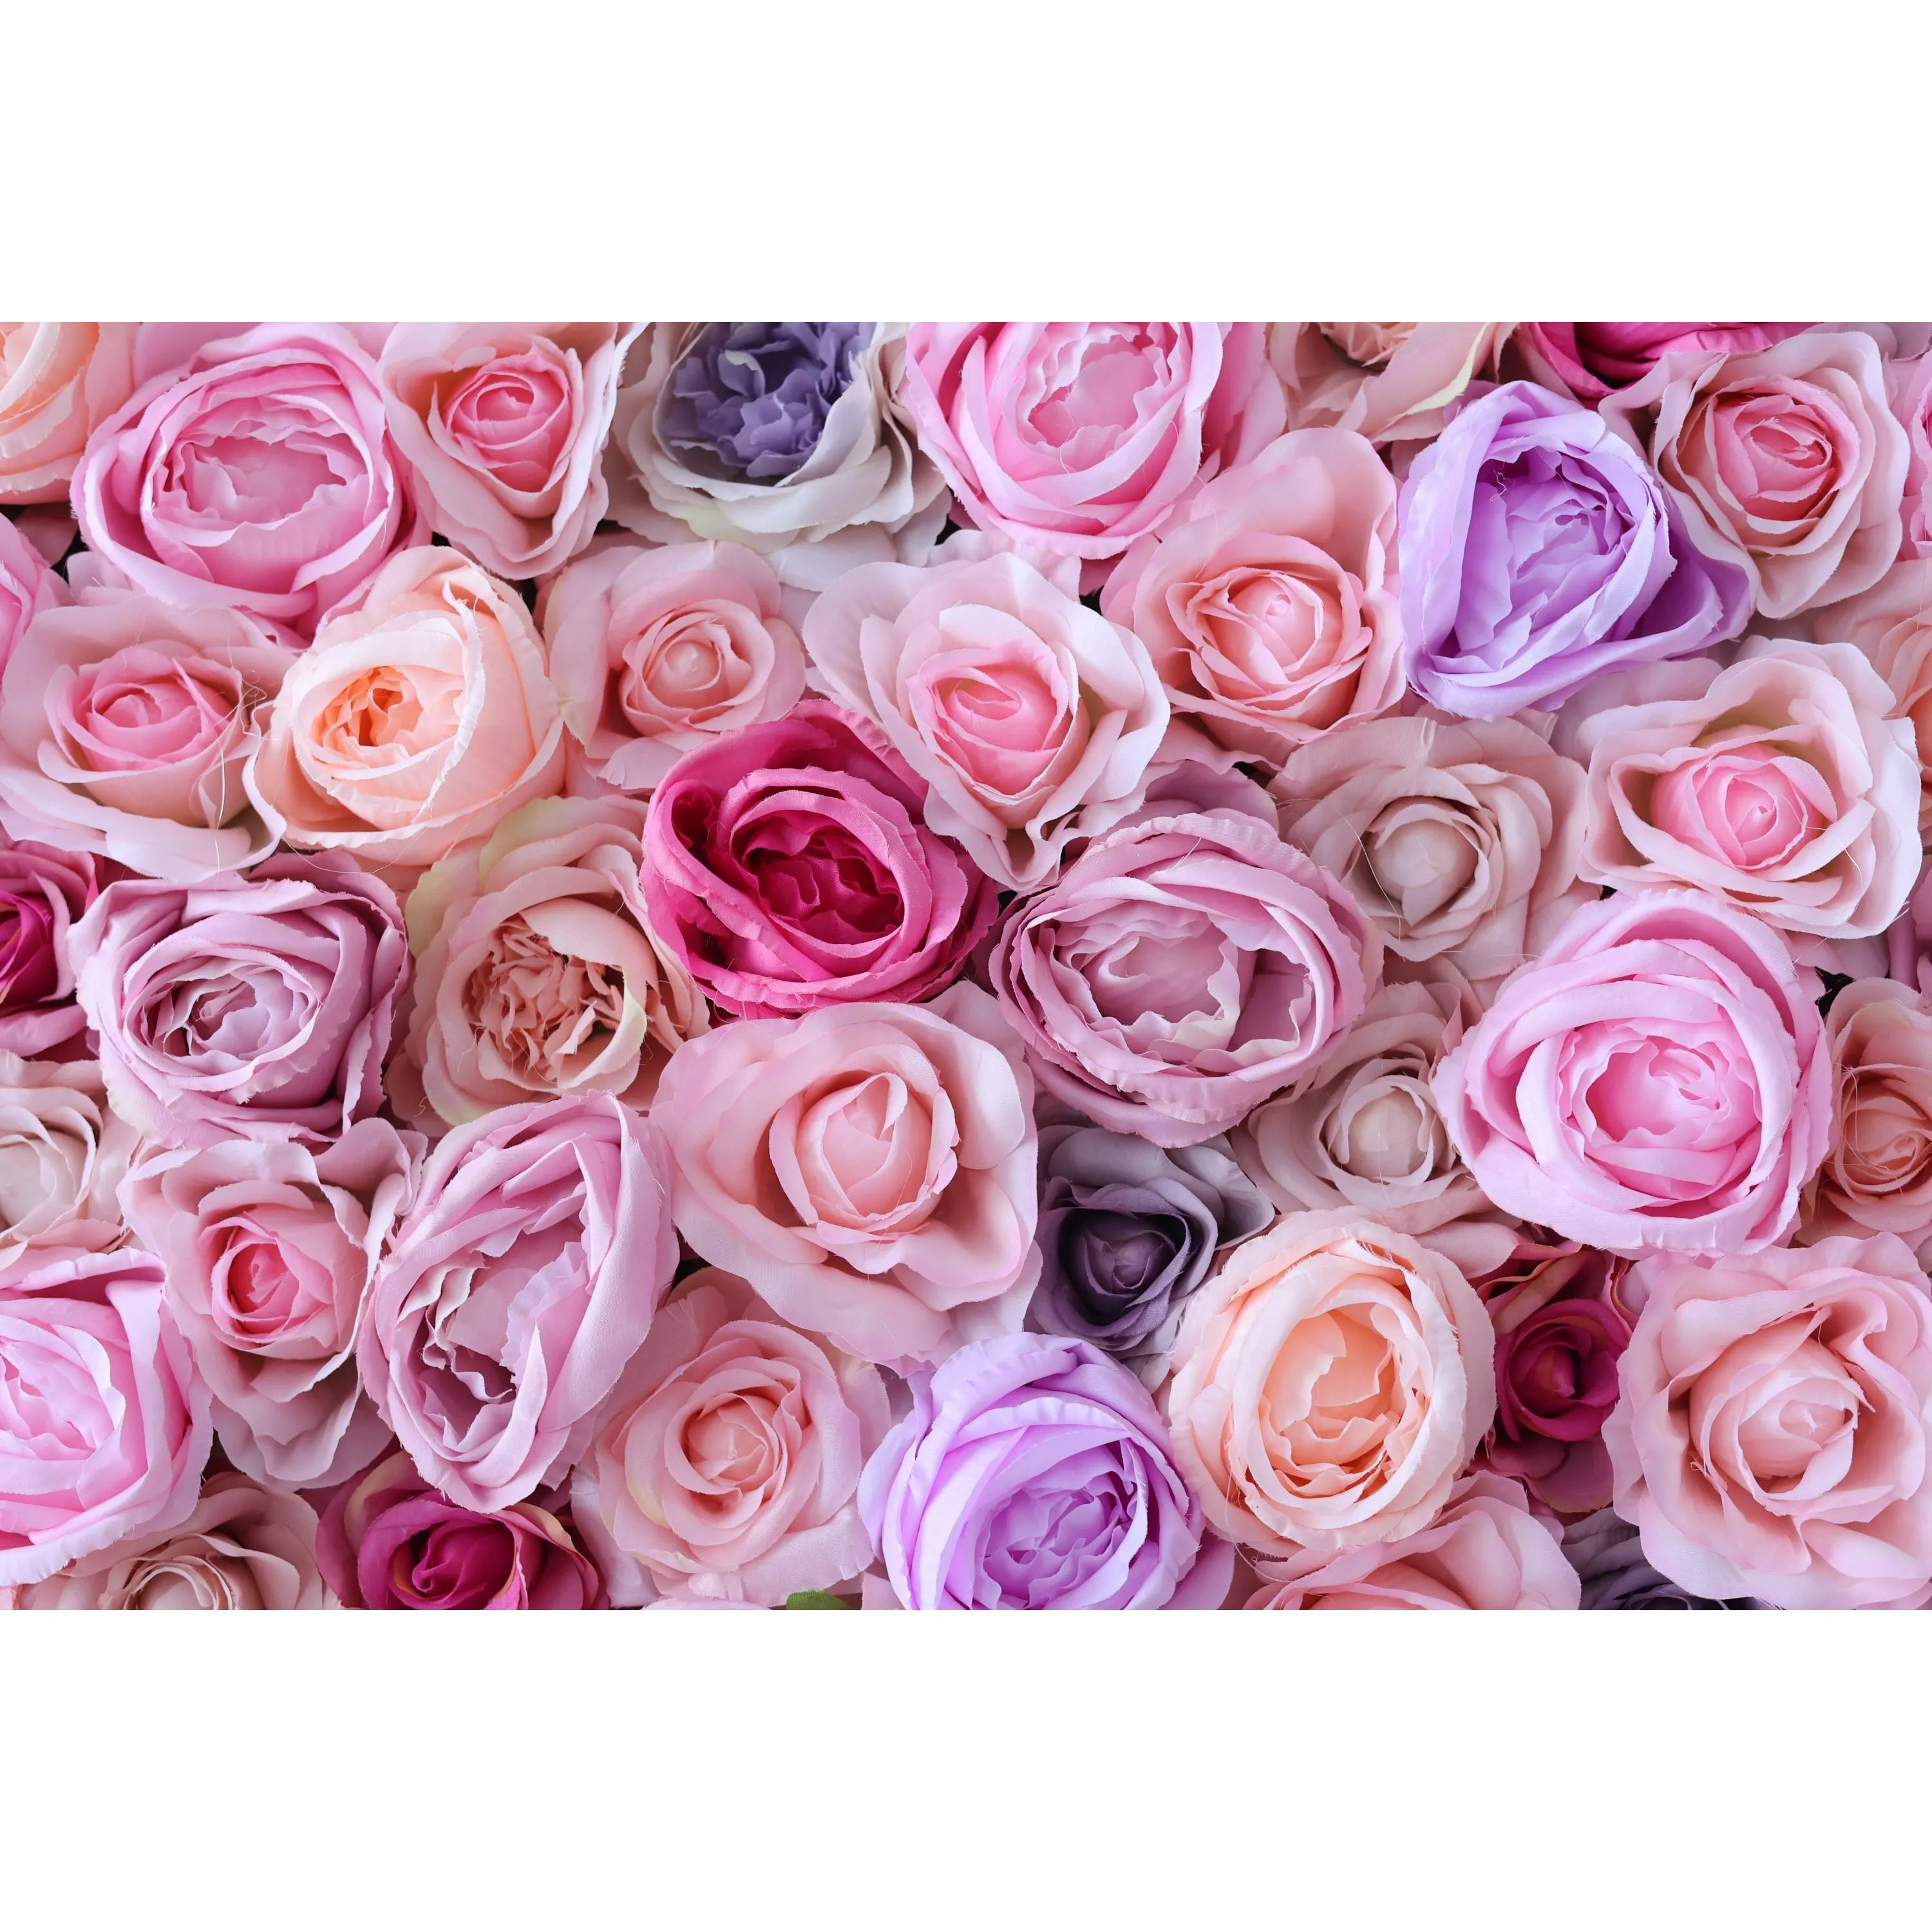 Serene Blossom Retreat : Embrasser la tranquillité avec les fleurs Valar – Panorama rose pour les événements et les sanctuaires SPA-VF-226